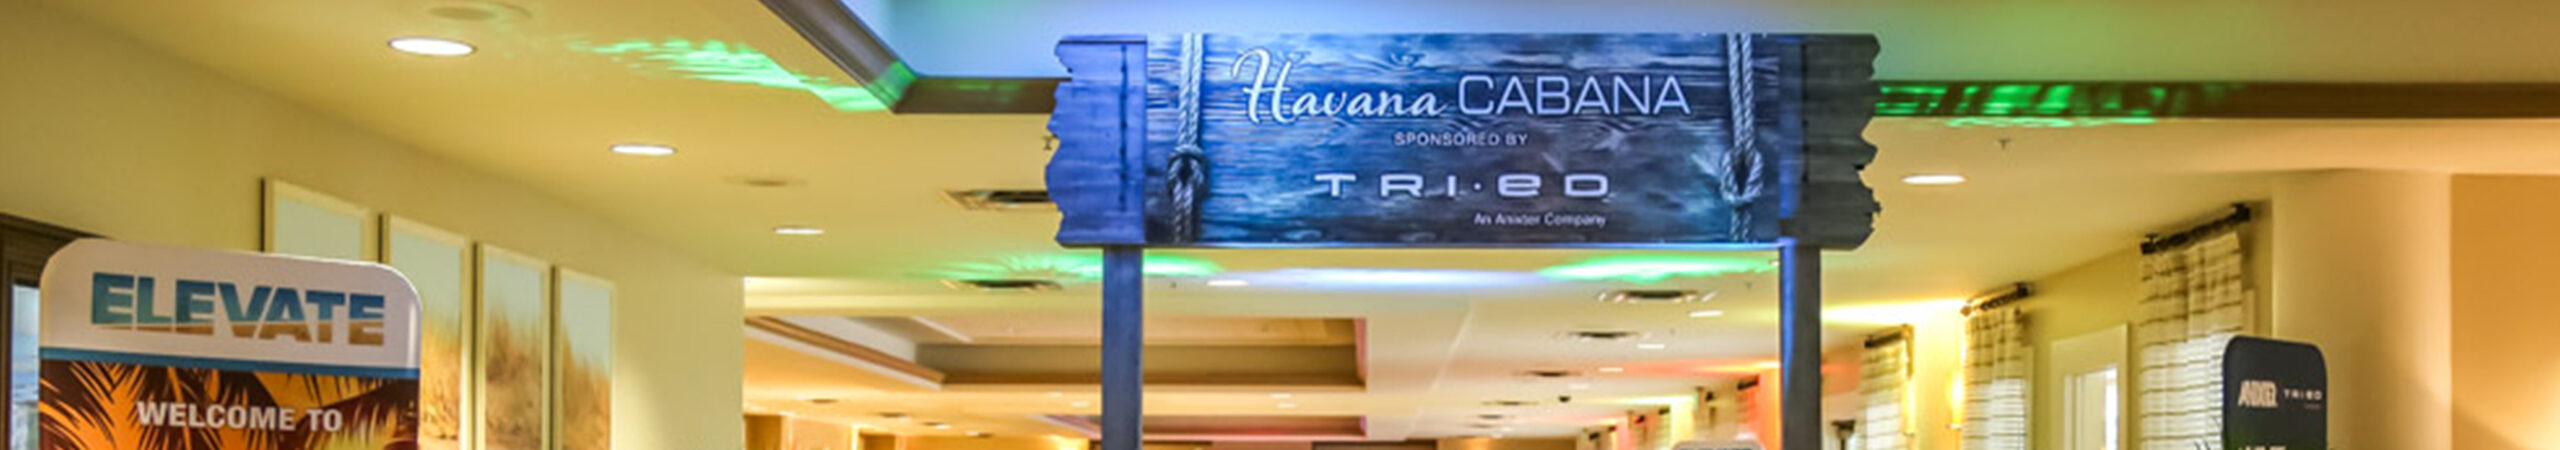 Elevate Havana Cabana